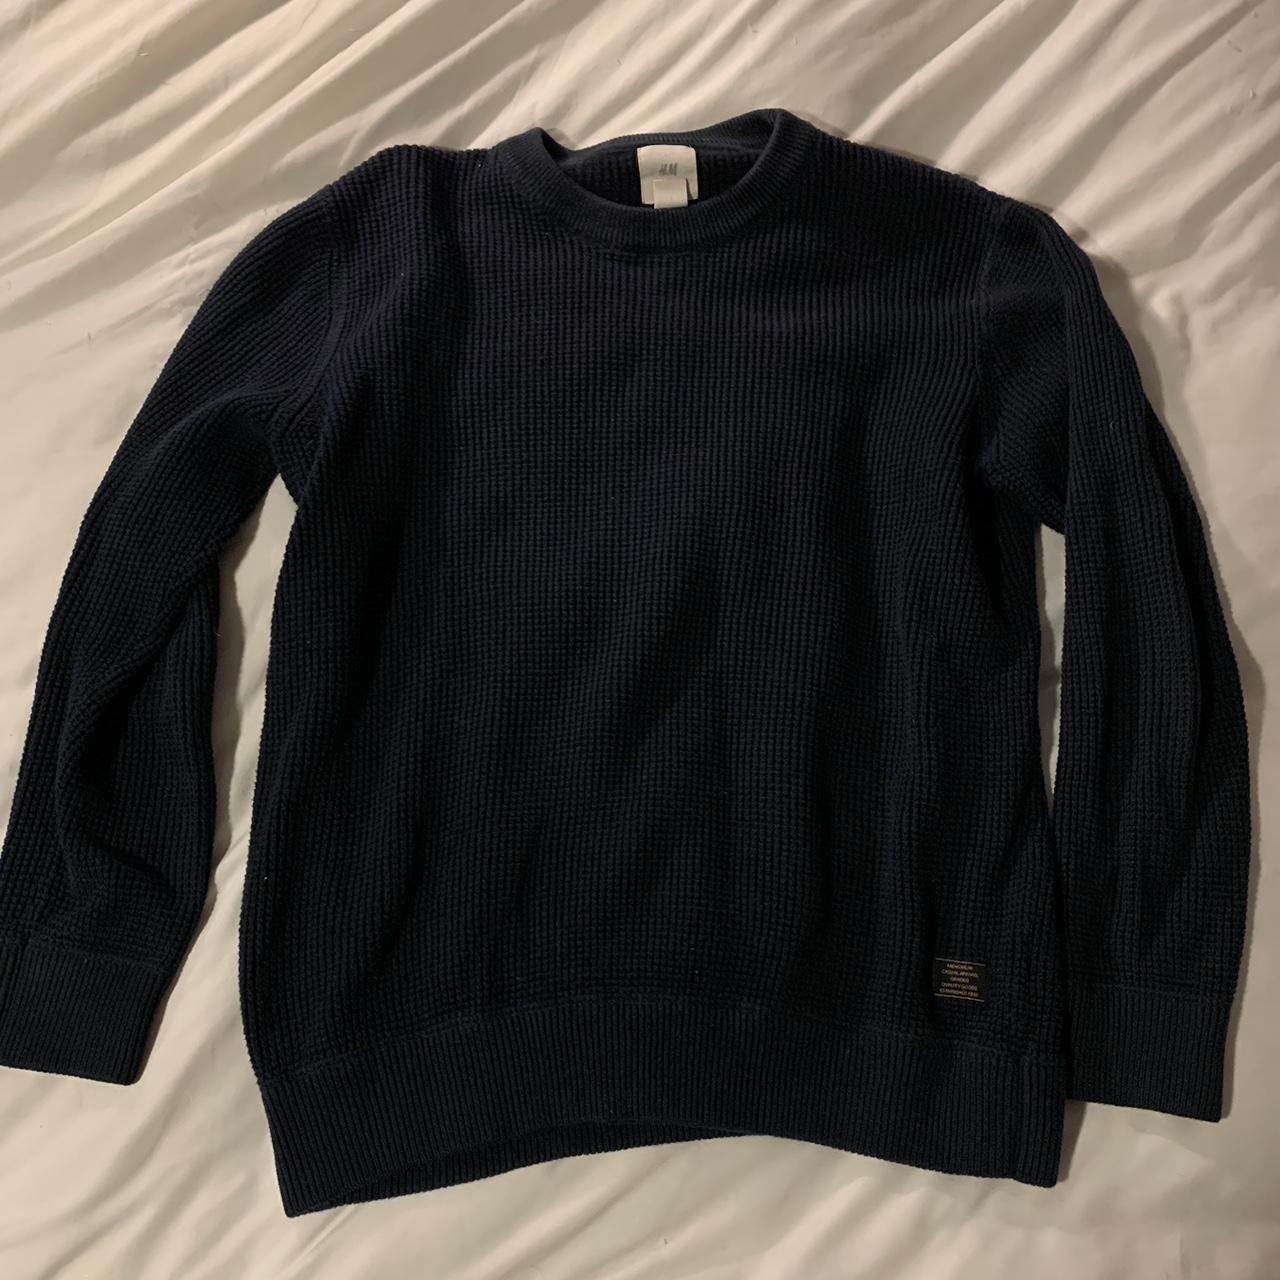 Navy waffle knit sweater - Depop